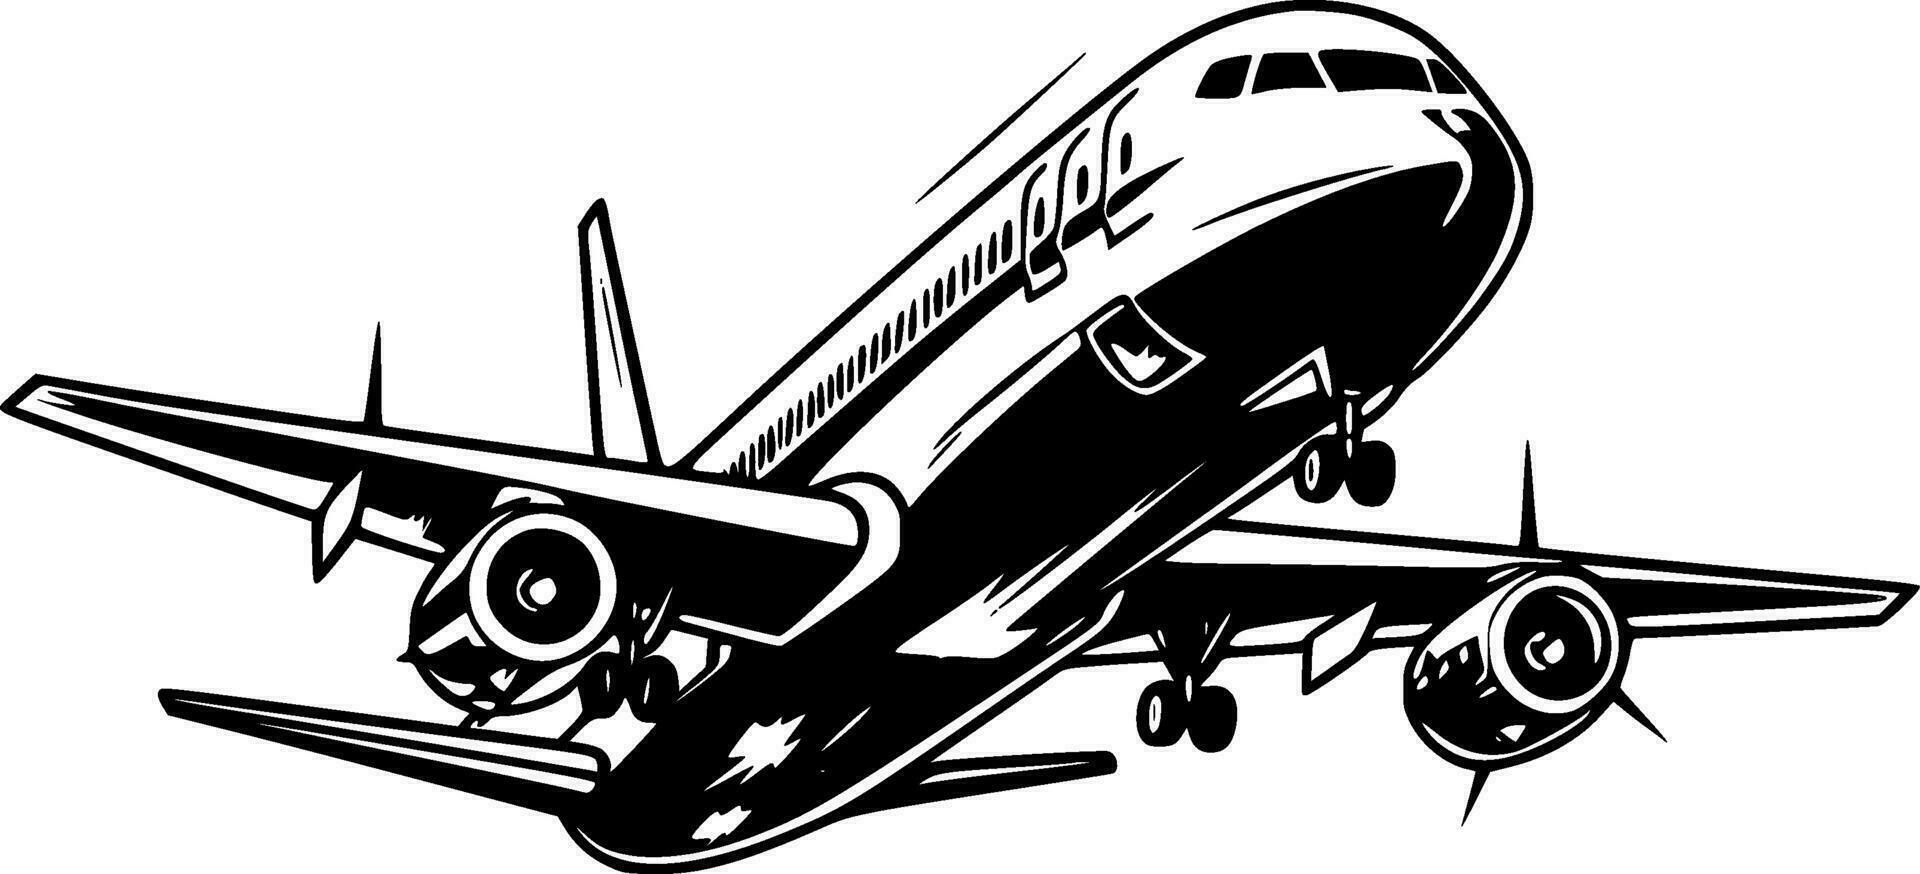 Flugzeug - - hoch Qualität Vektor Logo - - Vektor Illustration Ideal zum T-Shirt Grafik